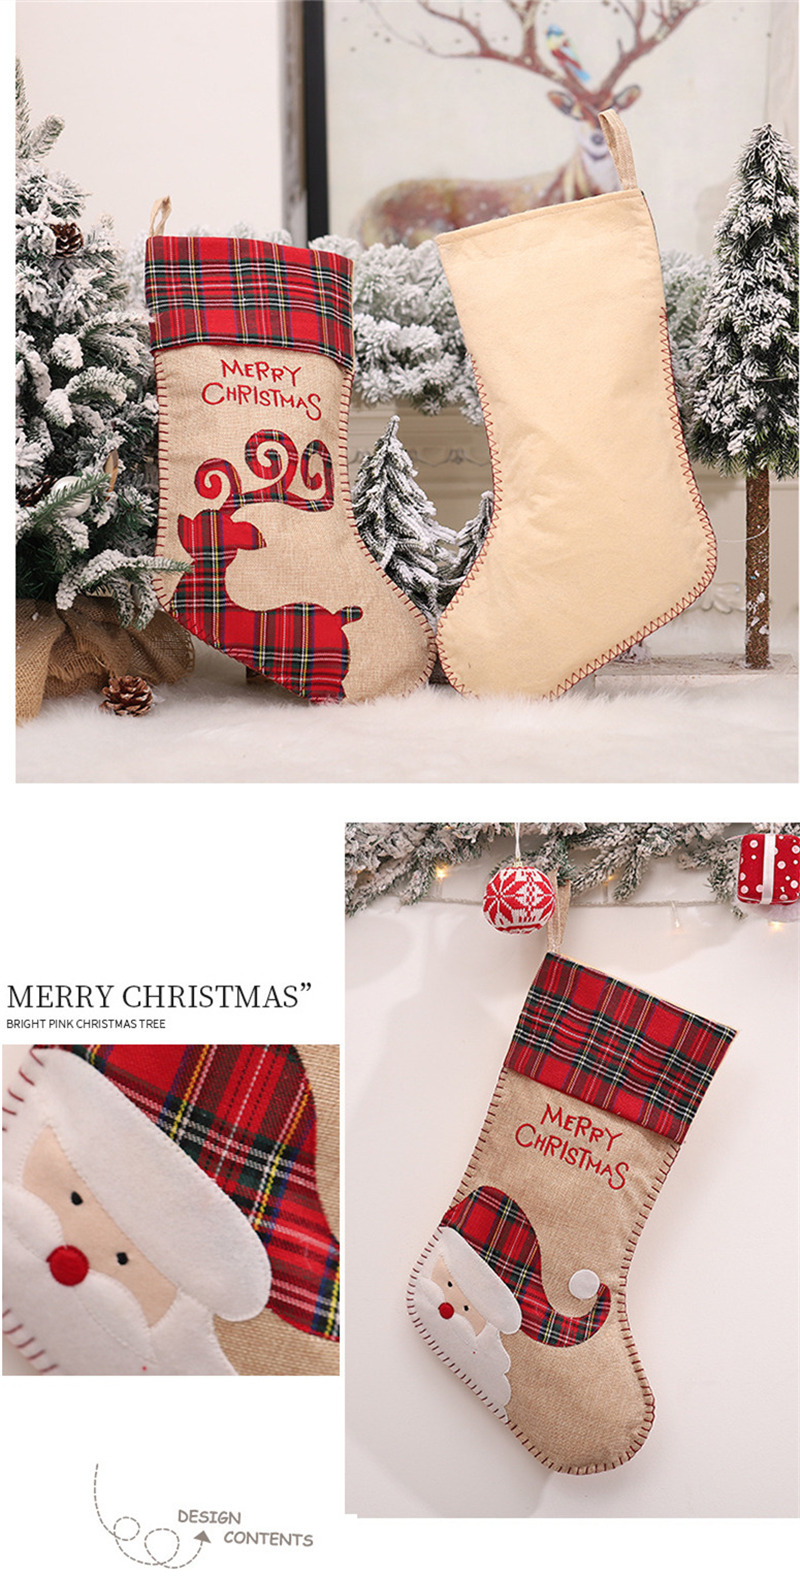 Christmas stockings decoration xmas tree ornament